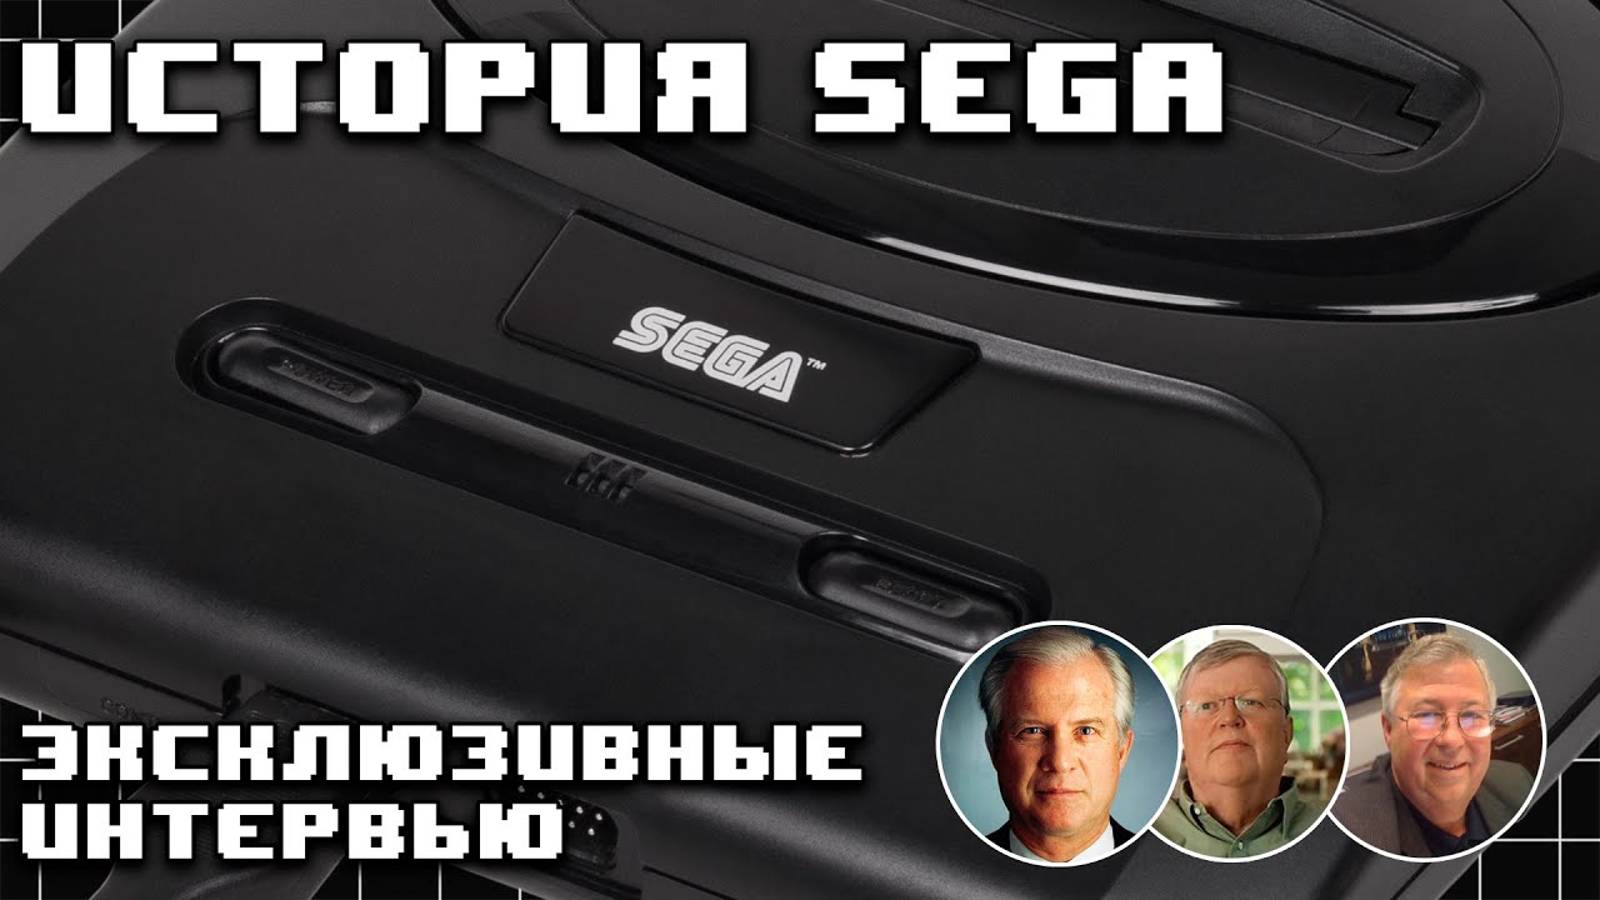 История Sega. Часть 1. Рождение 16-битной легенды Mega Drive  Genesis